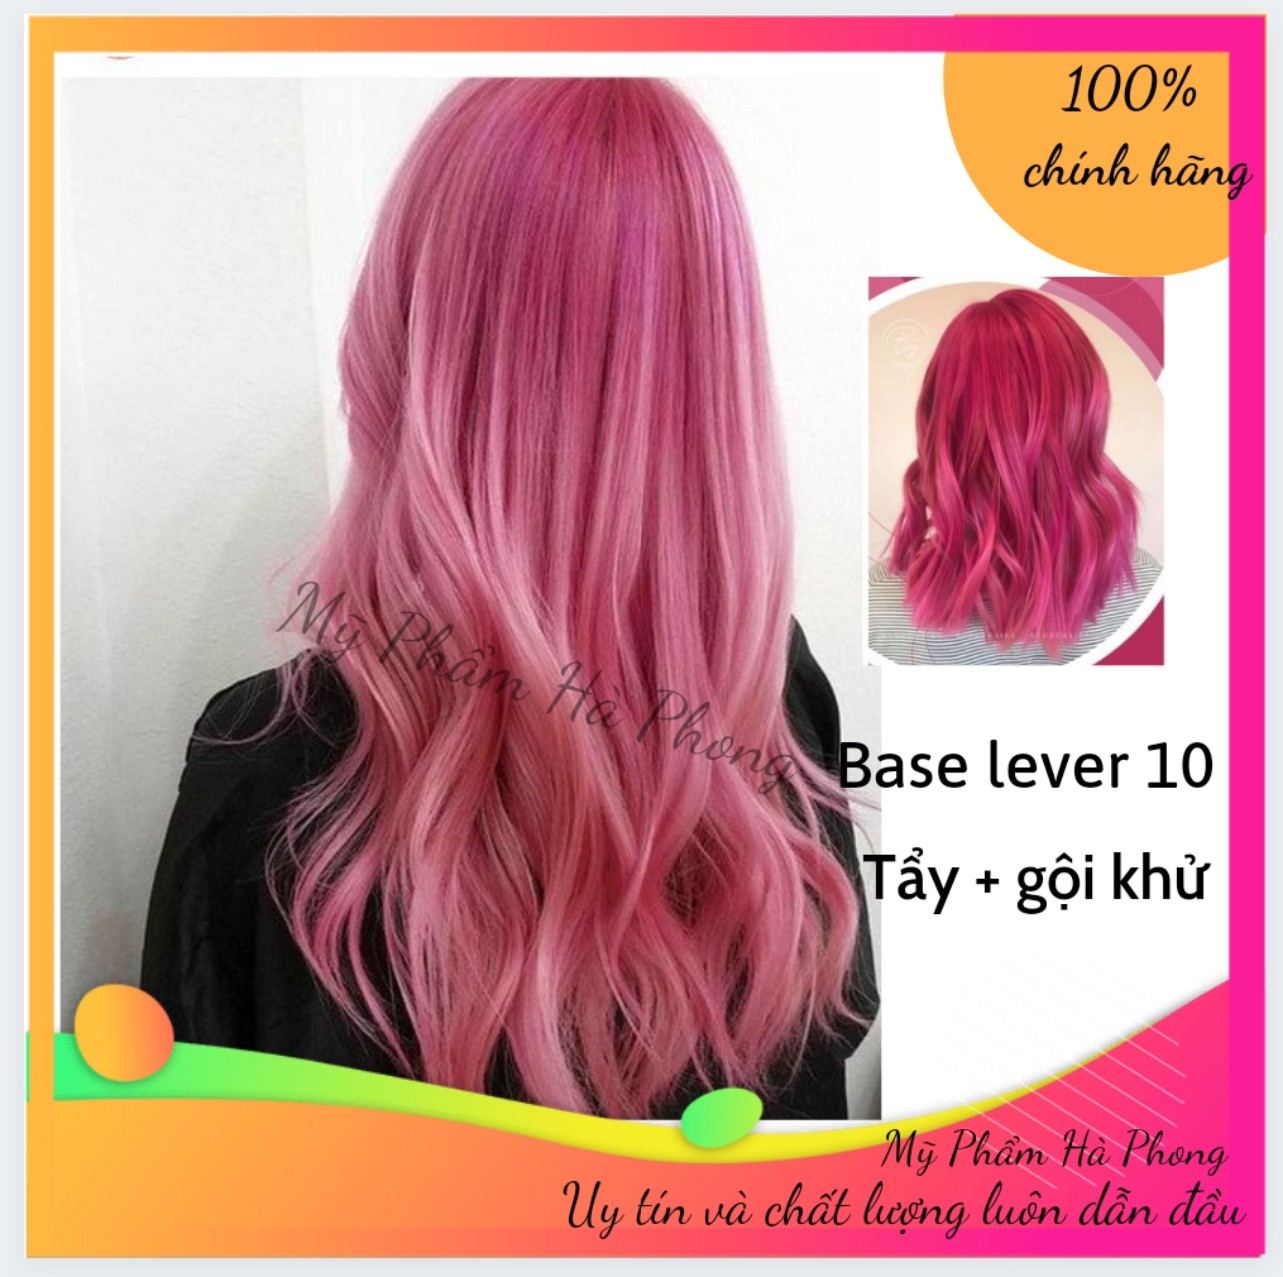 Bạn muốn thử phong cách mới với mái tóc hồng neon sáng đẹp mắt? Hãy xem hình ảnh nhuộm tóc hồng neon dưới đây và cùng trải nghiệm một vẻ ngoài cá tính, độc đáo nhé.